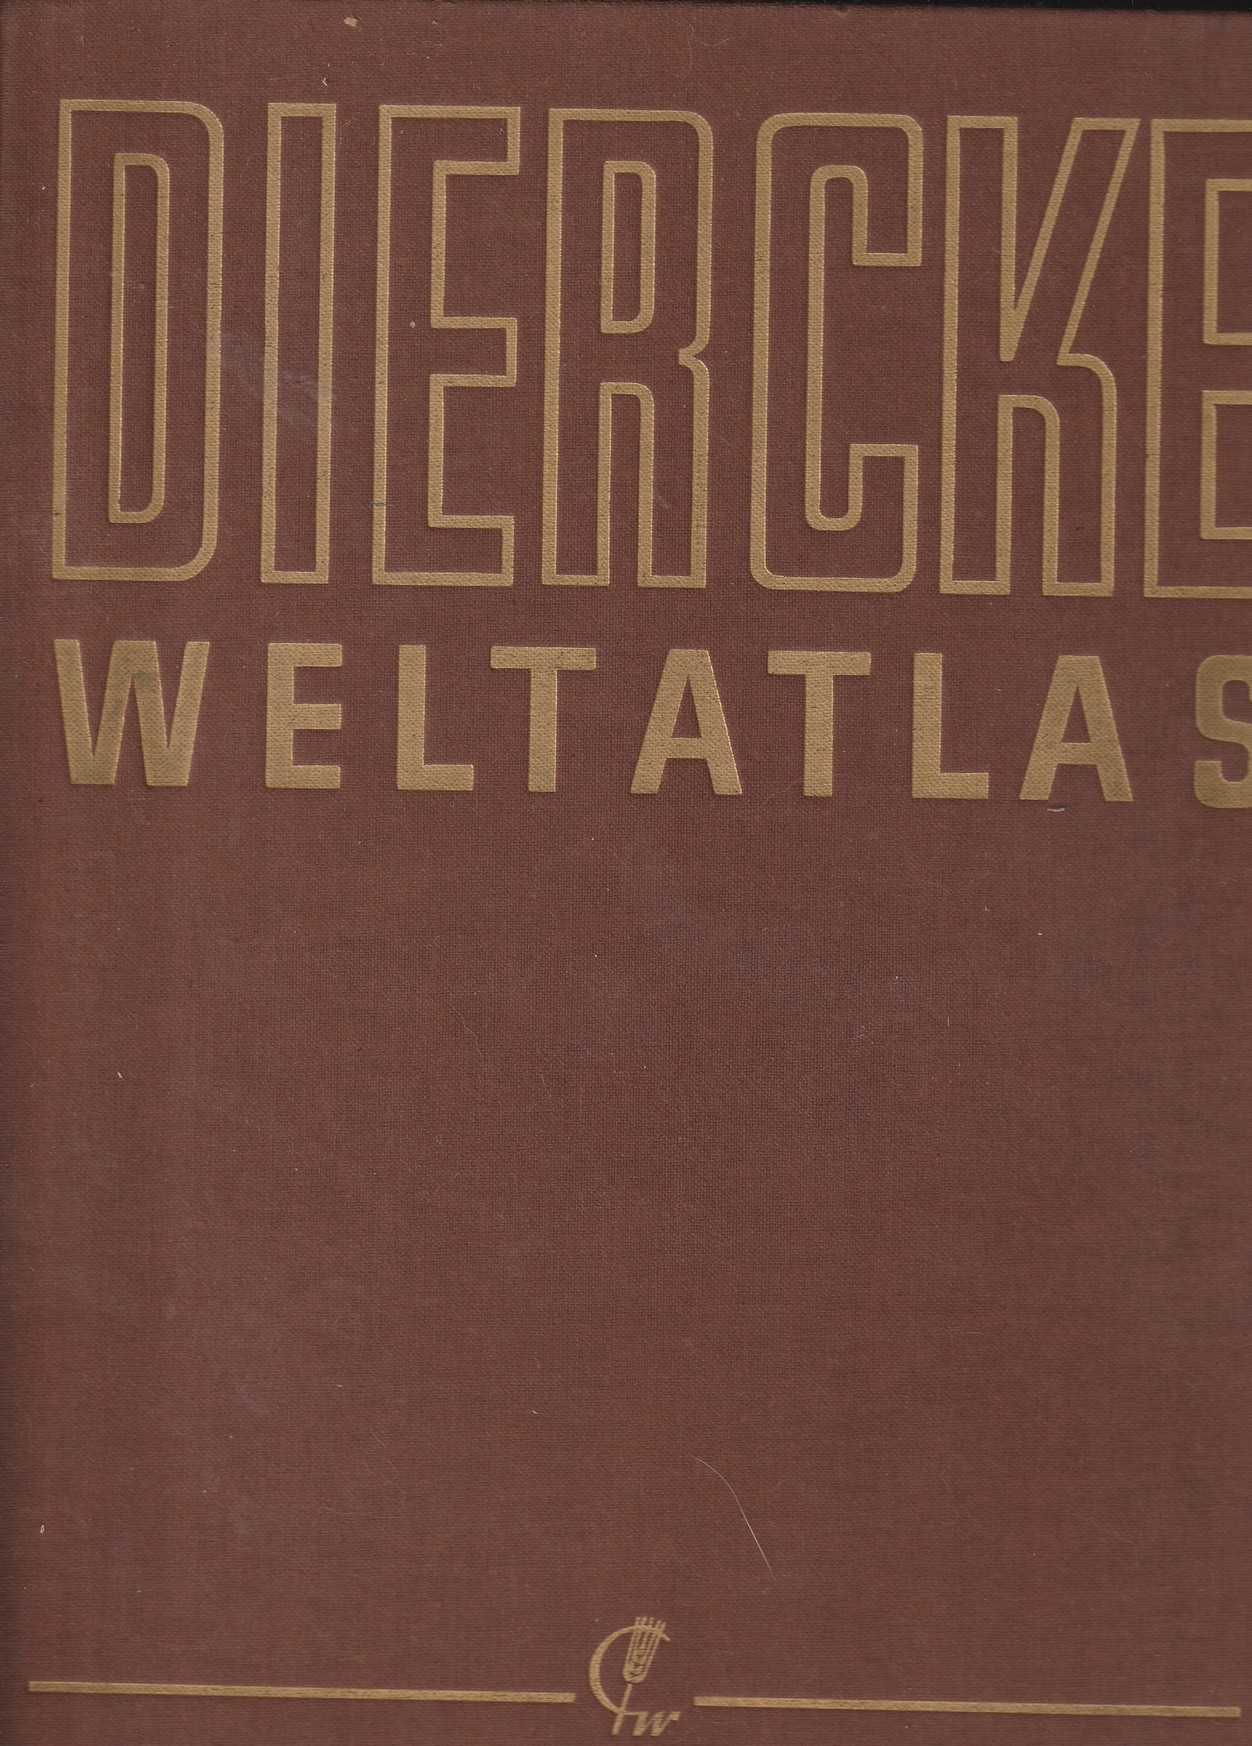 Dierecke Weltaltlas (Kulturverein Guntersblum CC BY-NC-SA)